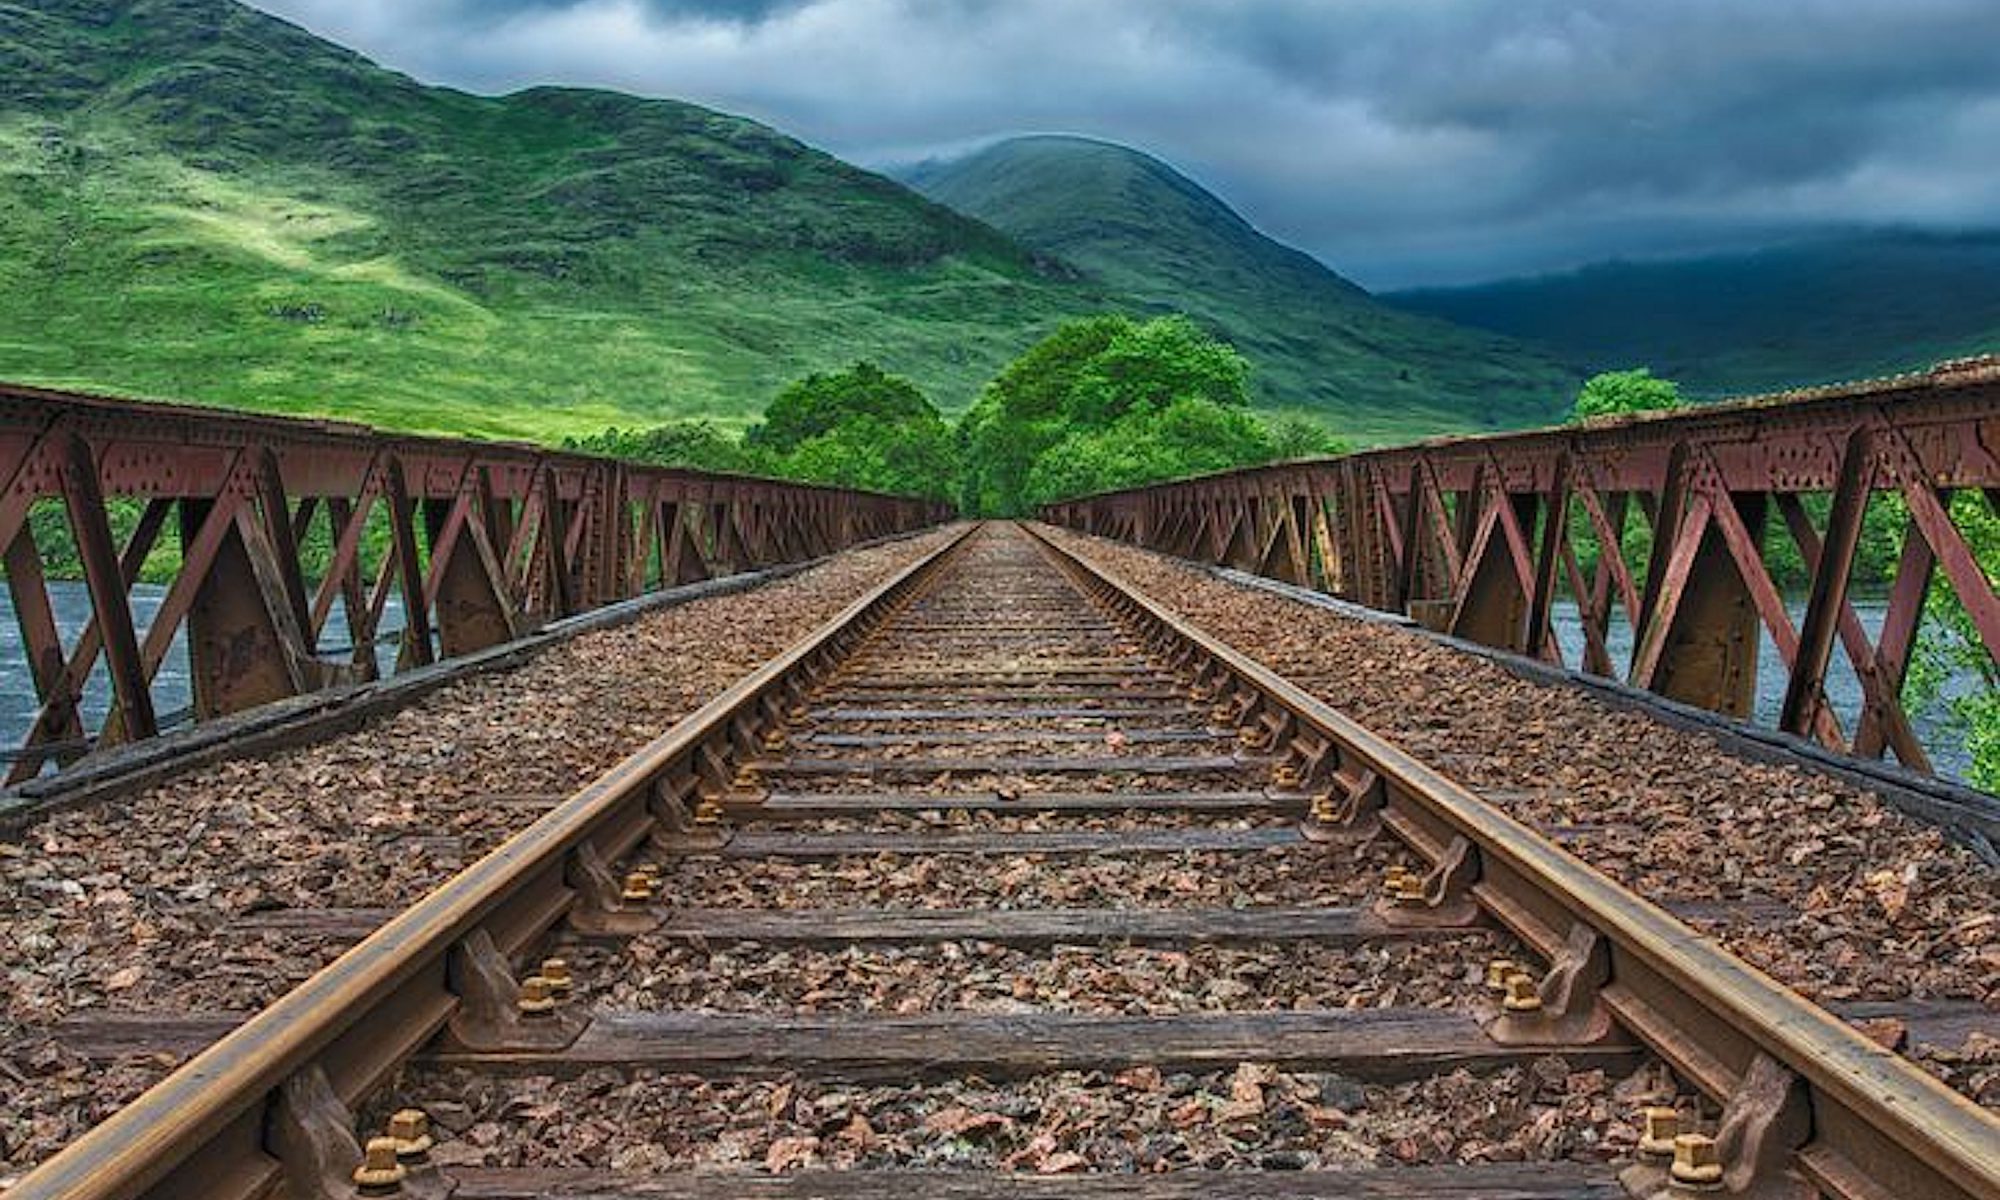 Rail trip trough the jungle